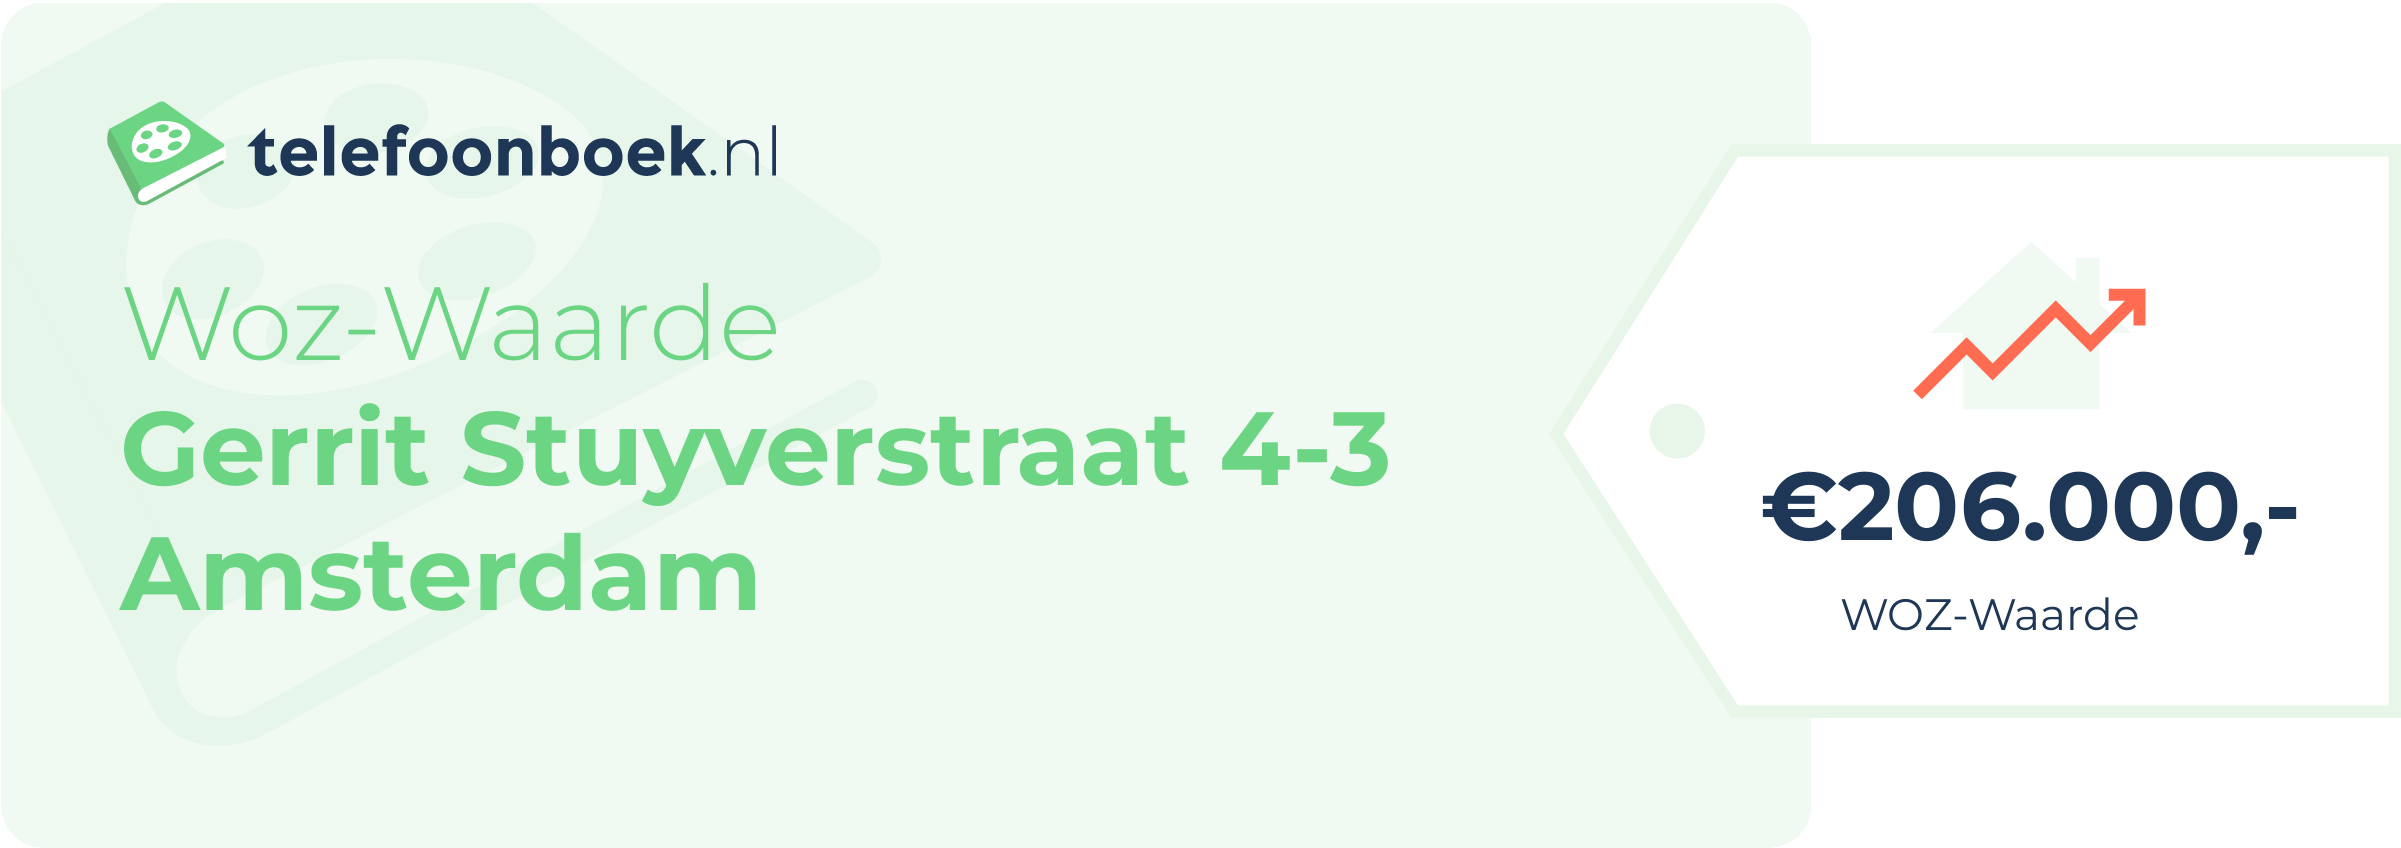 WOZ-waarde Gerrit Stuyverstraat 4-3 Amsterdam